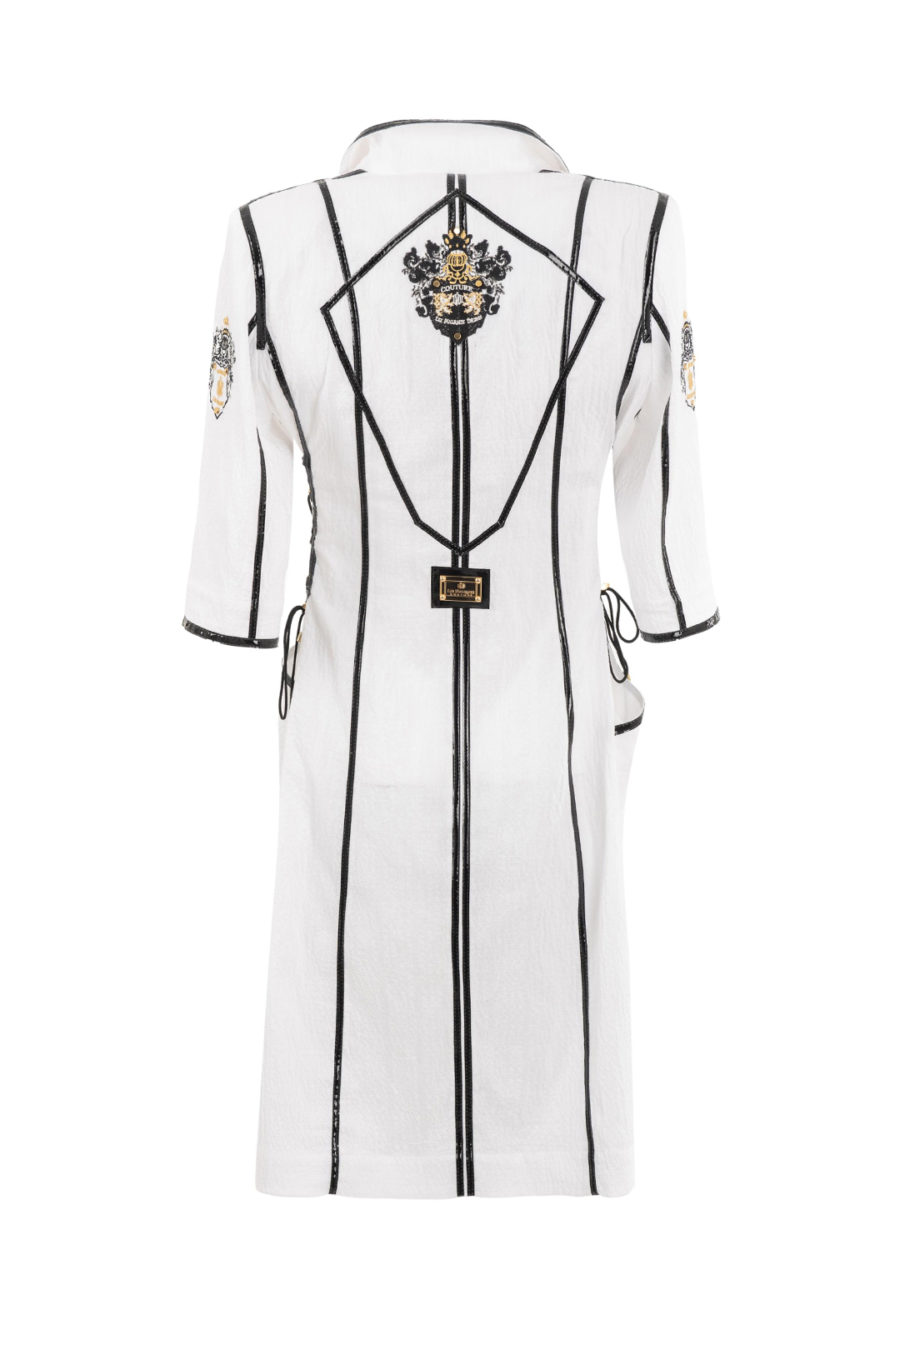 Kleid aus weißen Crash mit Goldbeschlägen und schwarzen Lackkontrasten, Kurzarm